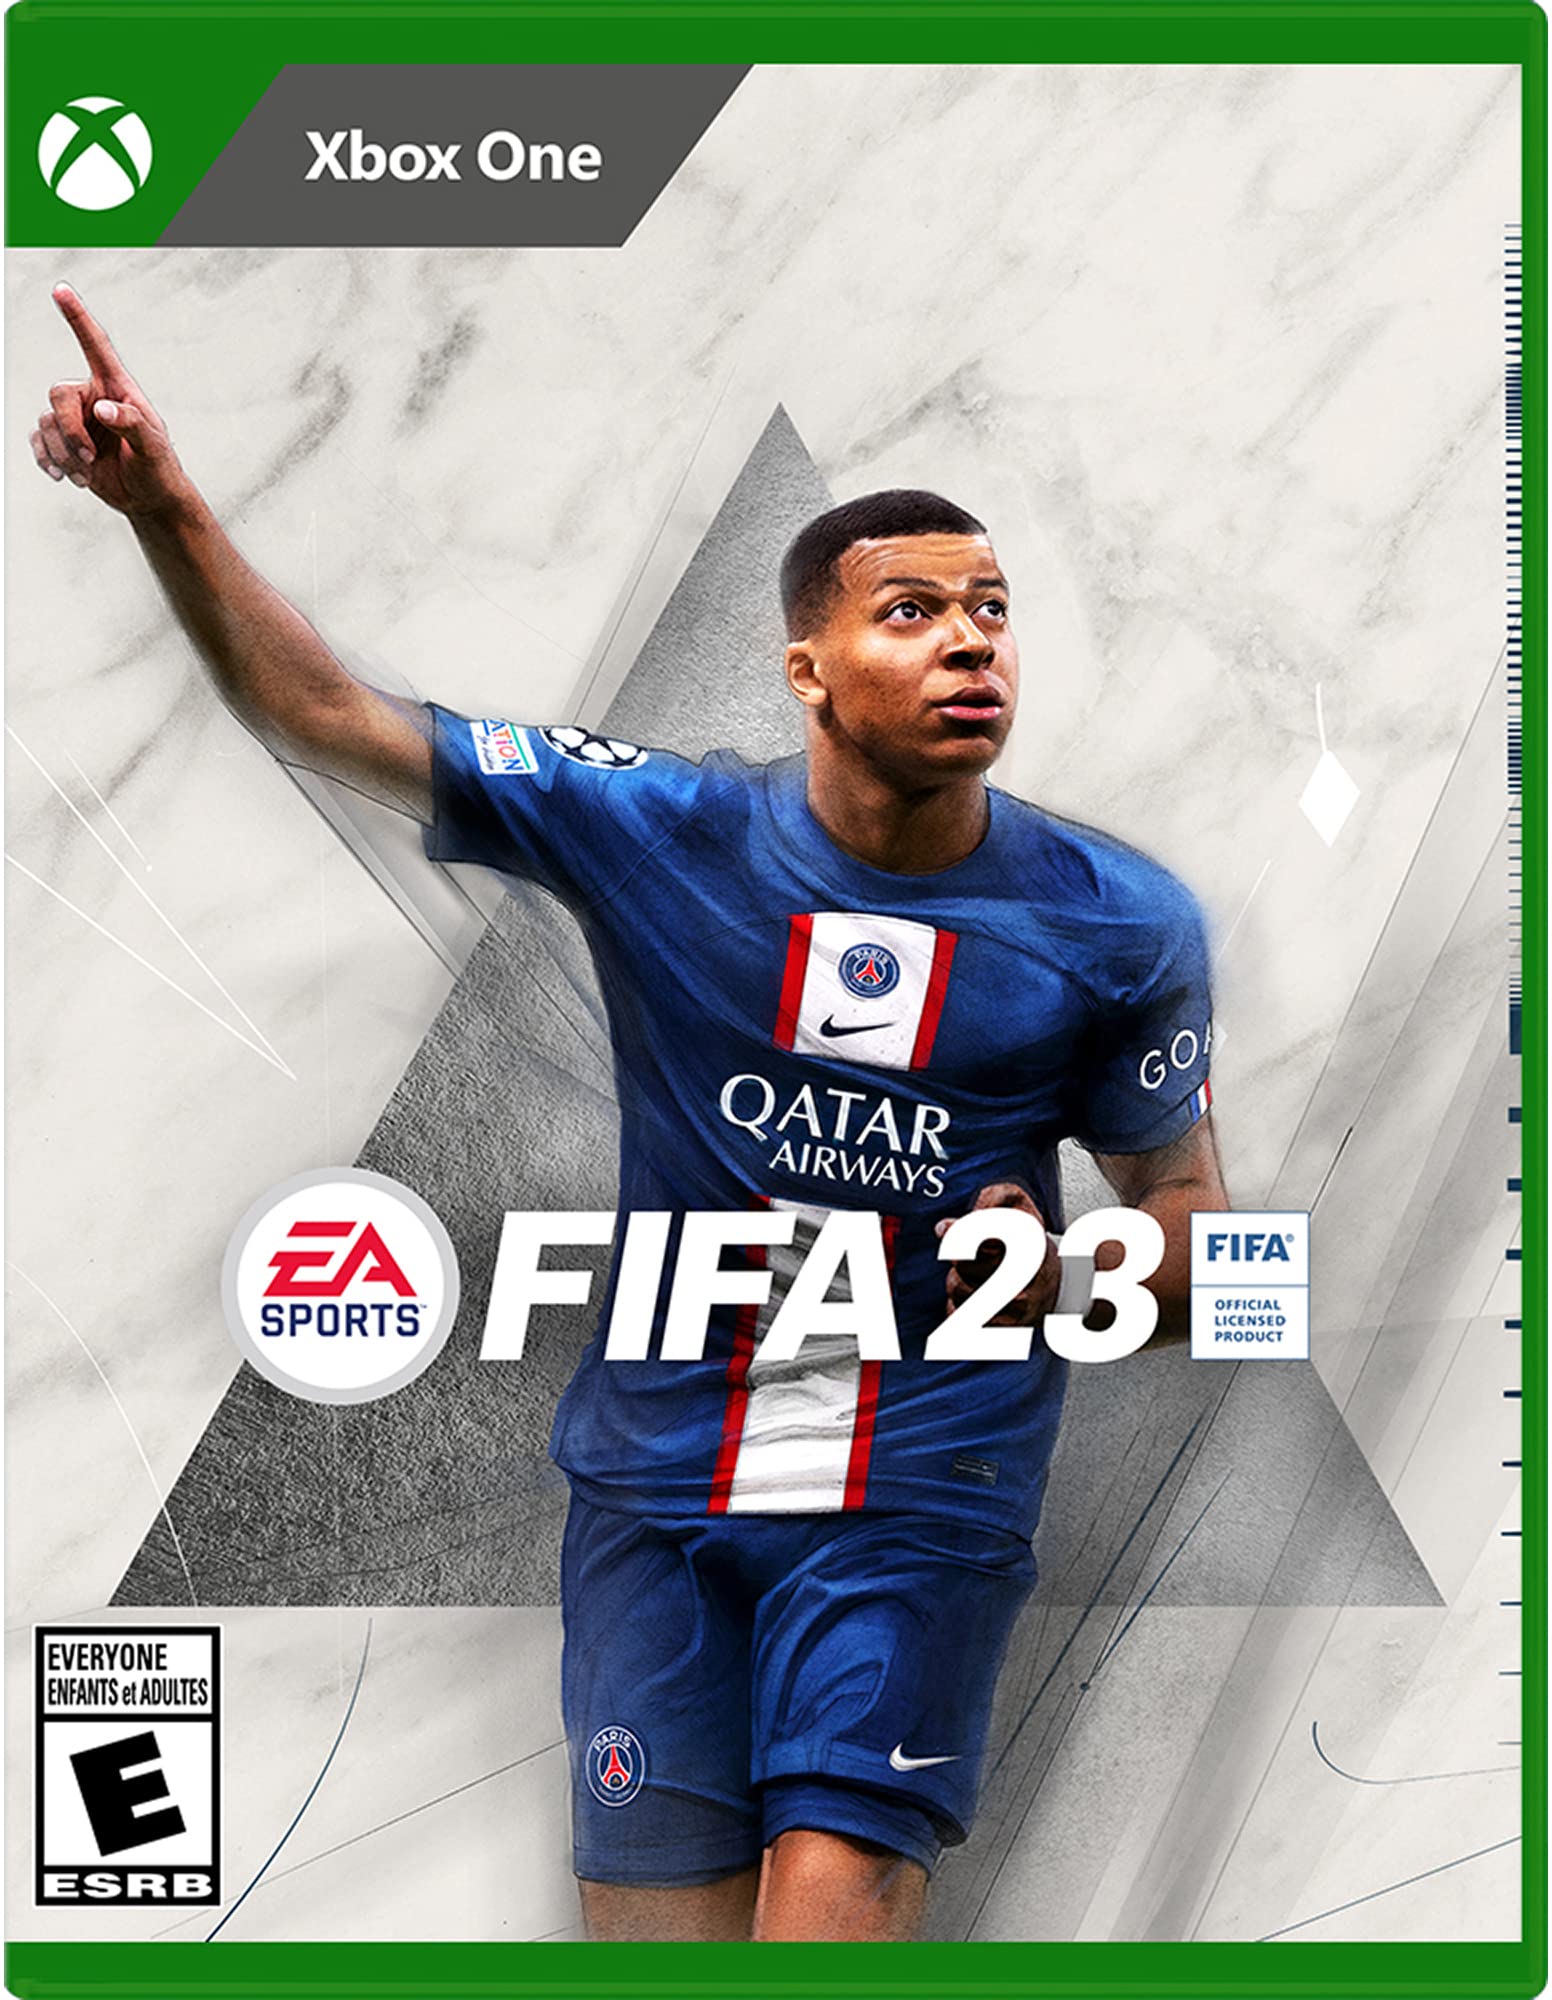 Mua FIFA 23 Xbox One trên Amazon Mỹ chính hãng 2023 Fado